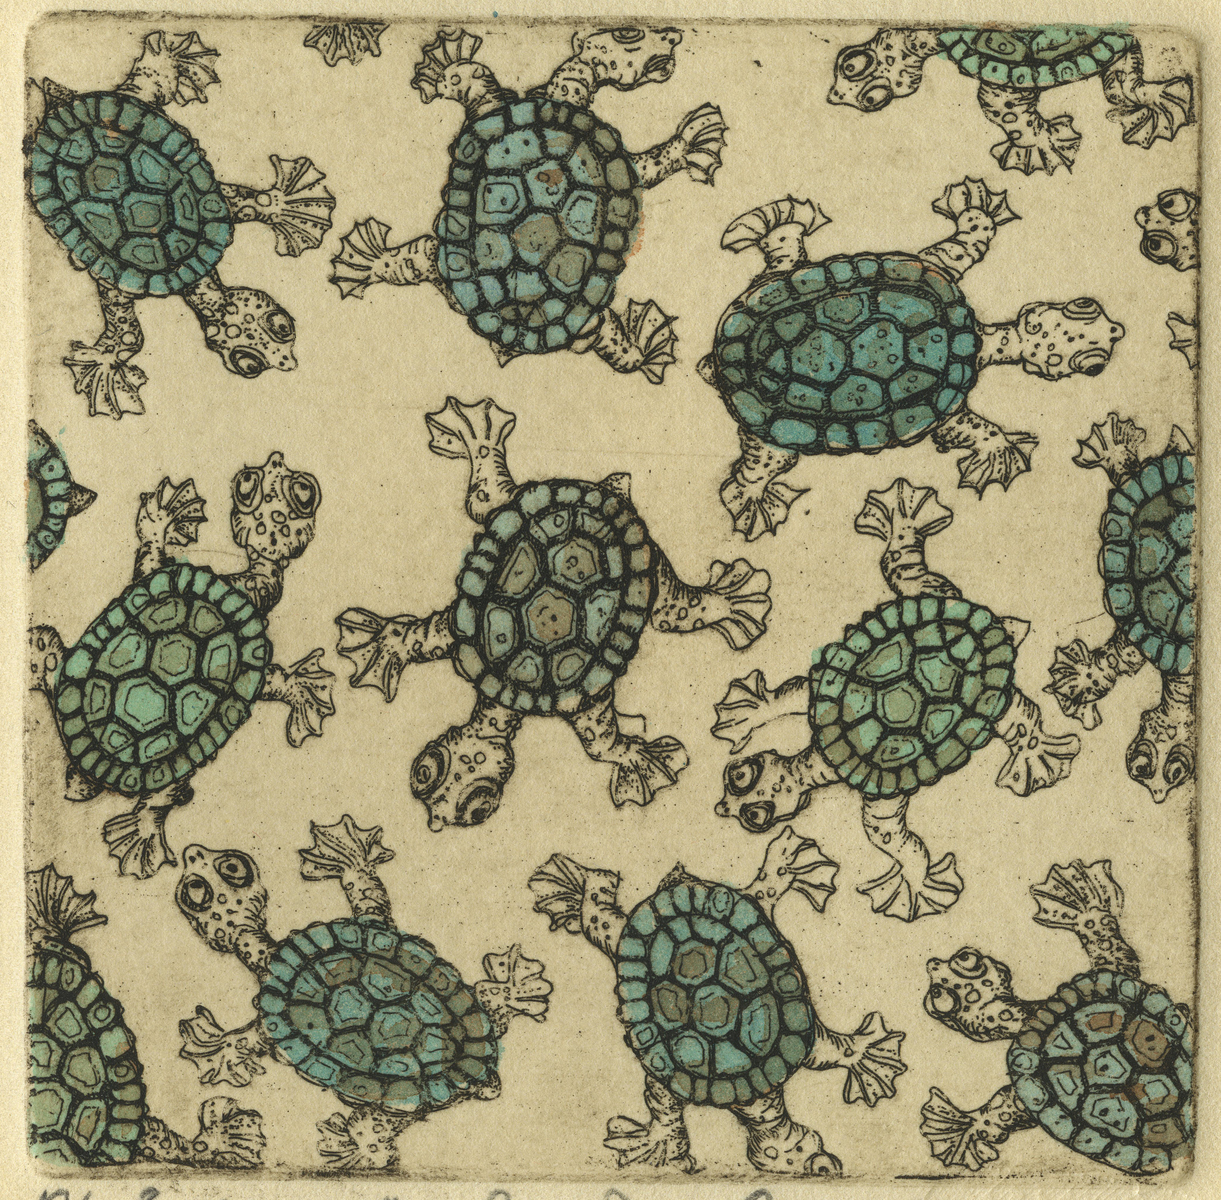 Congregated Creatures – Turtles